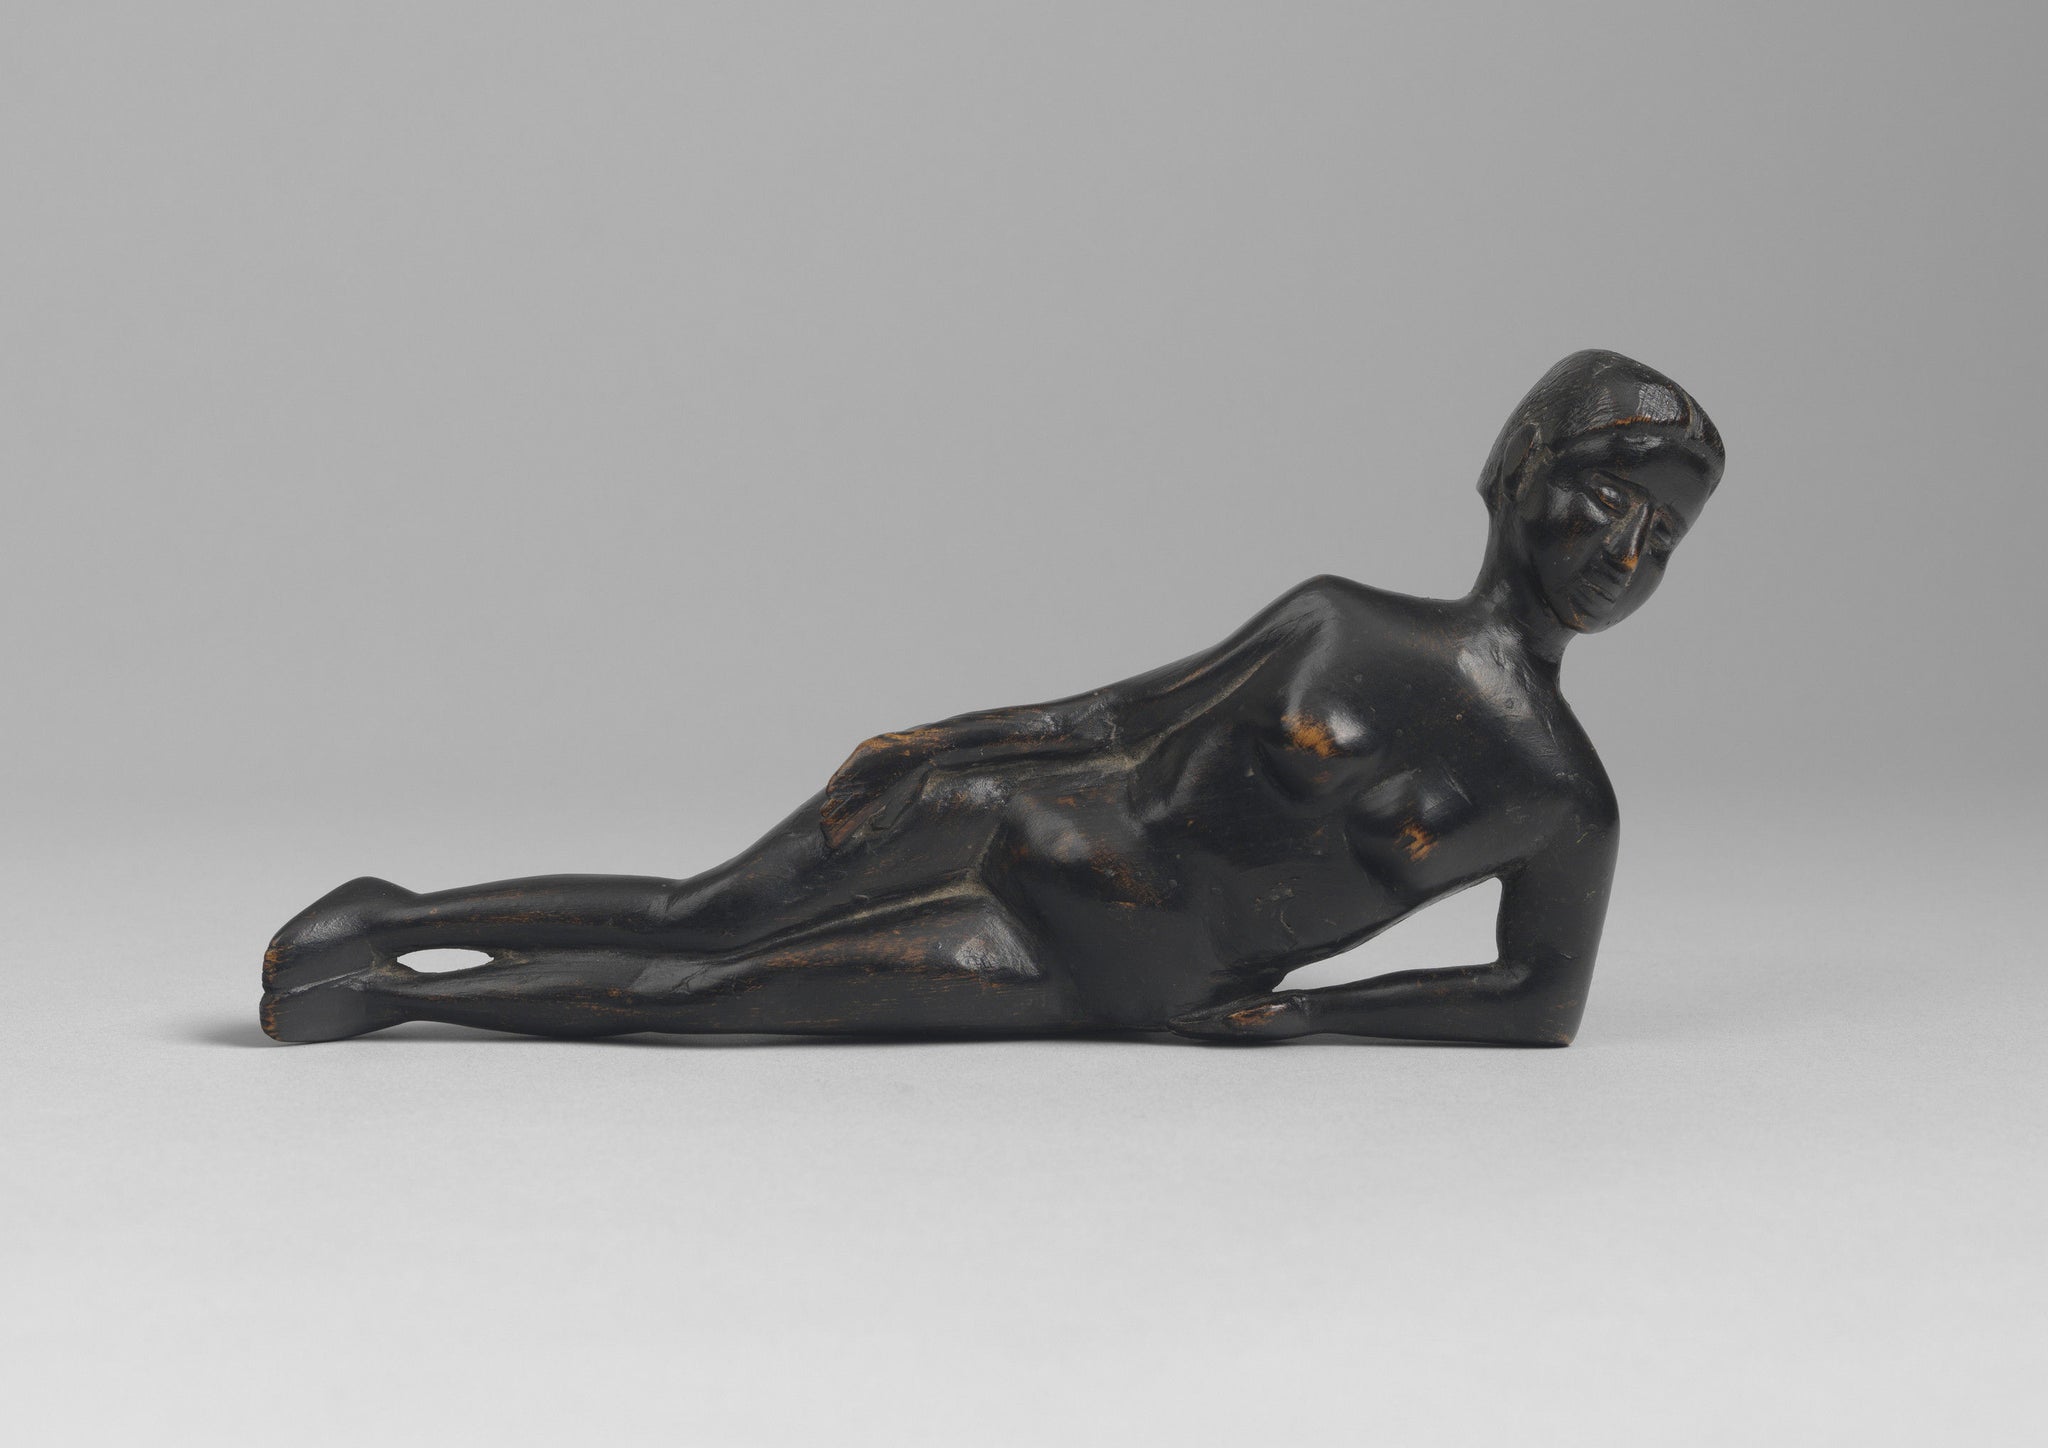 Small Primitive “Keepsake” Sculpture Of A Reclining Nude Female Figure